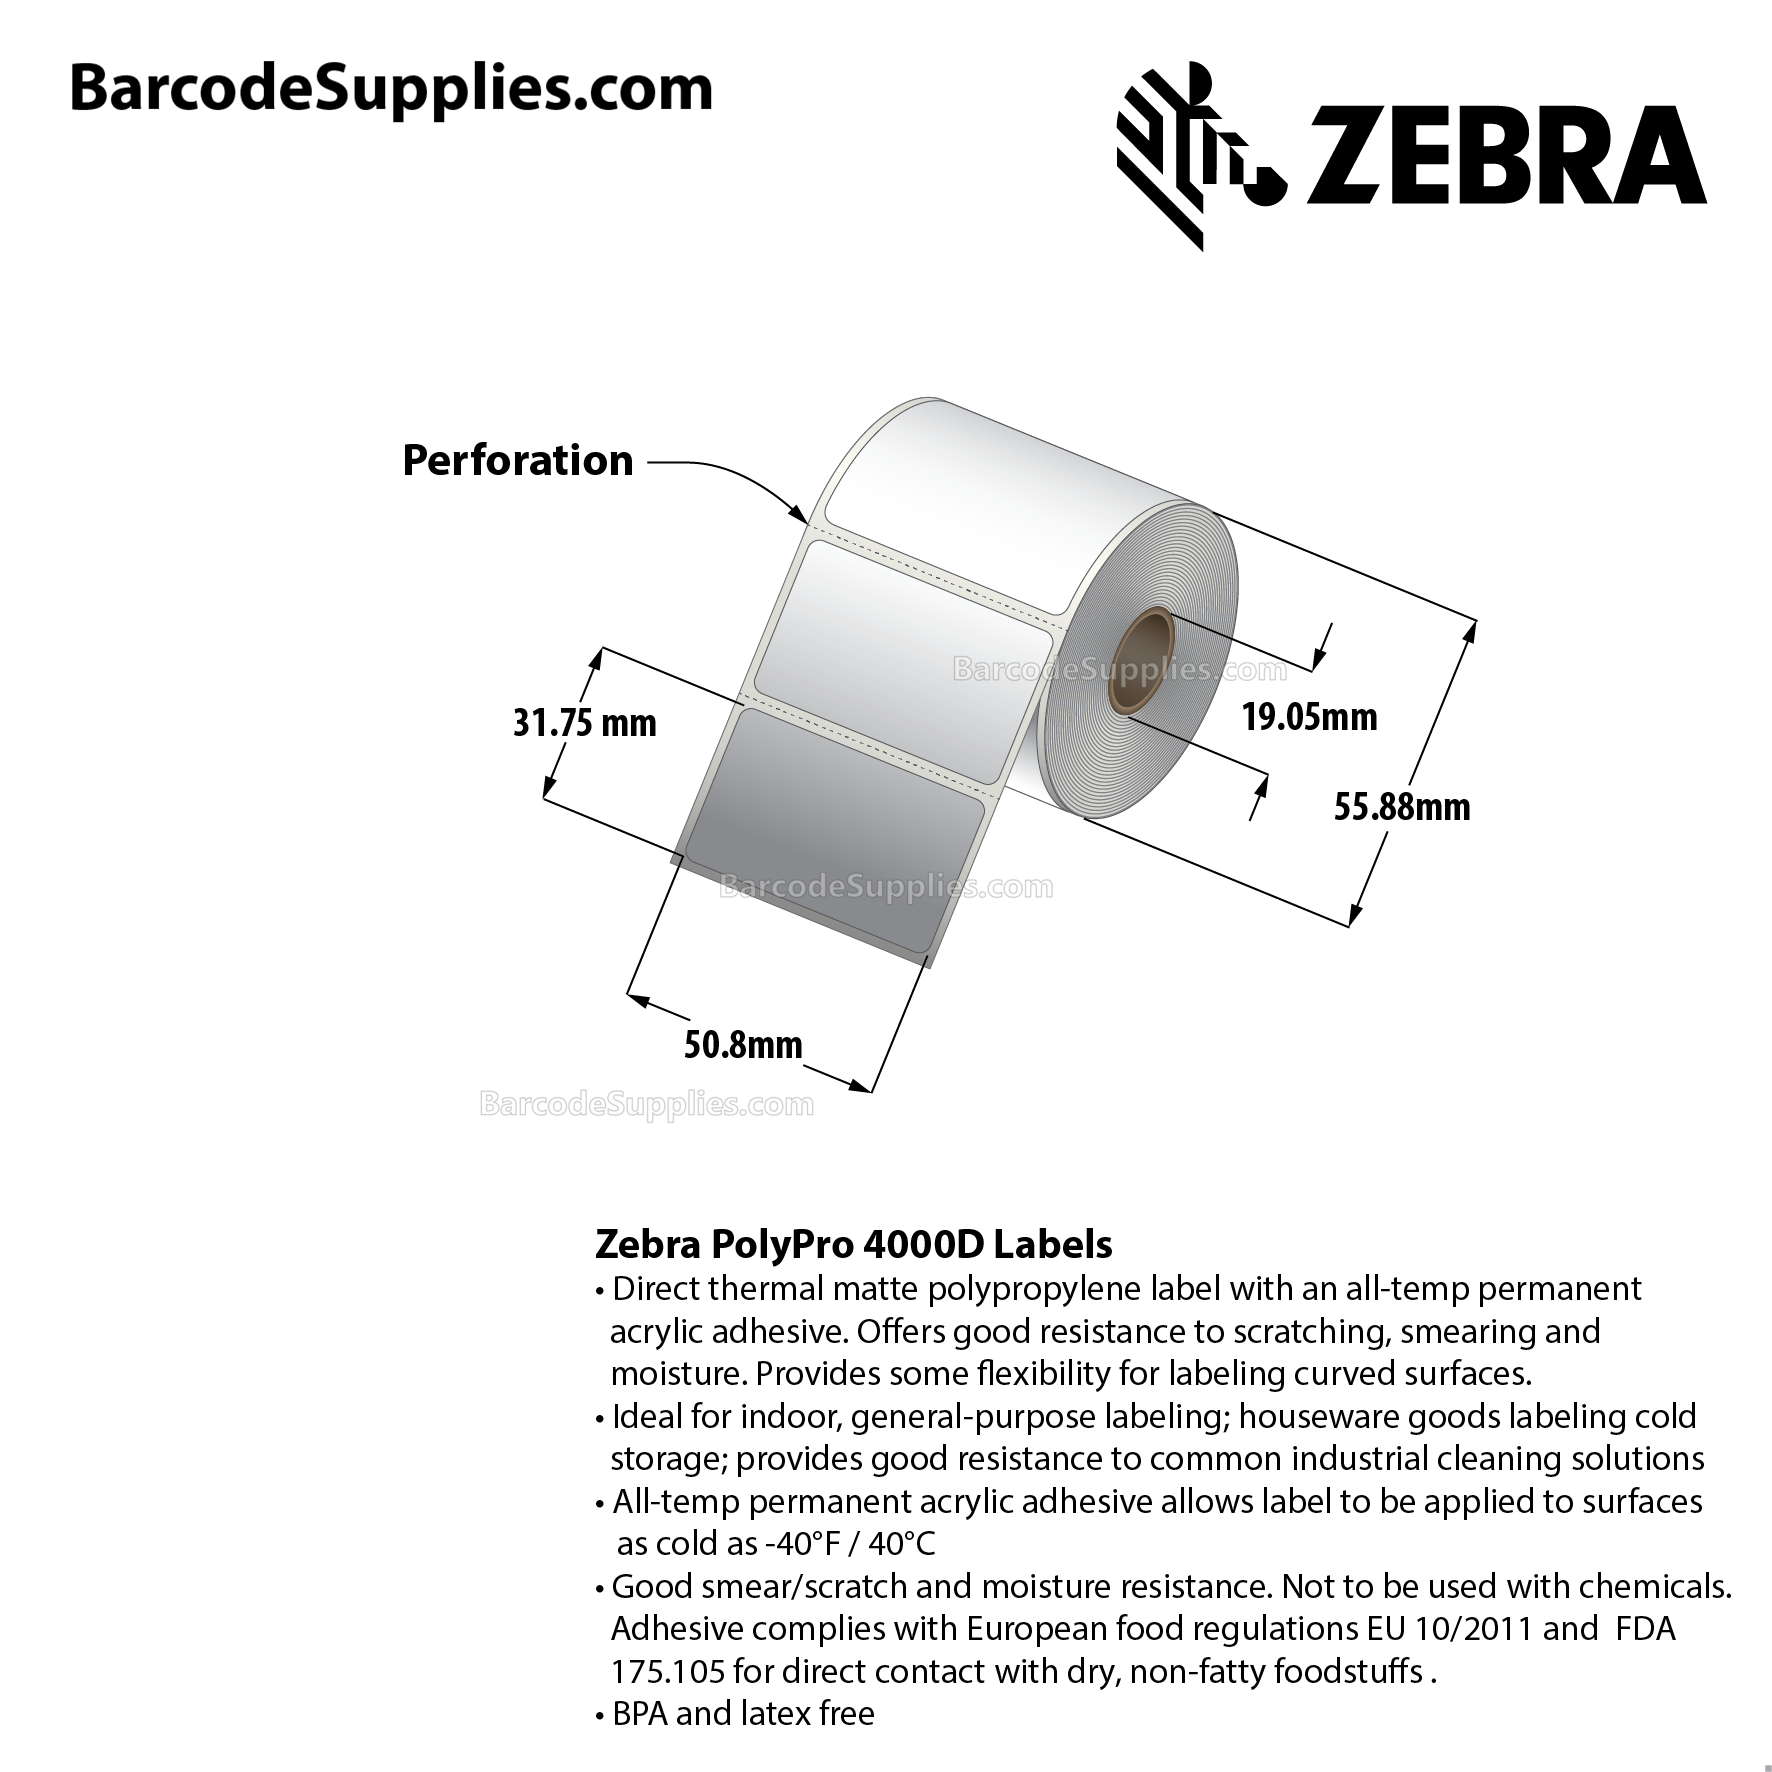 Zebra PolyPro 4000D Polypropylene Barcode Labels - Lowest Price